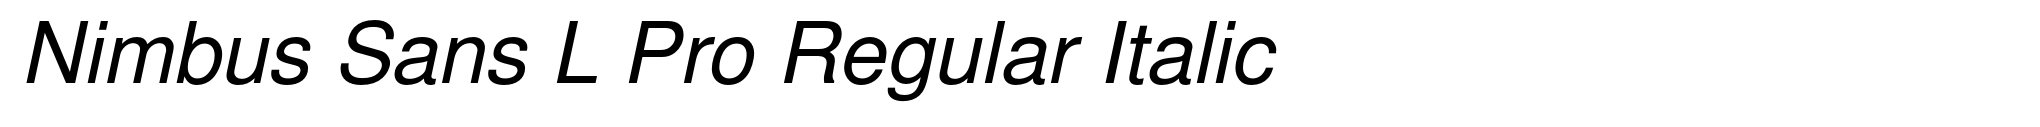 Nimbus Sans L Pro Regular Italic image